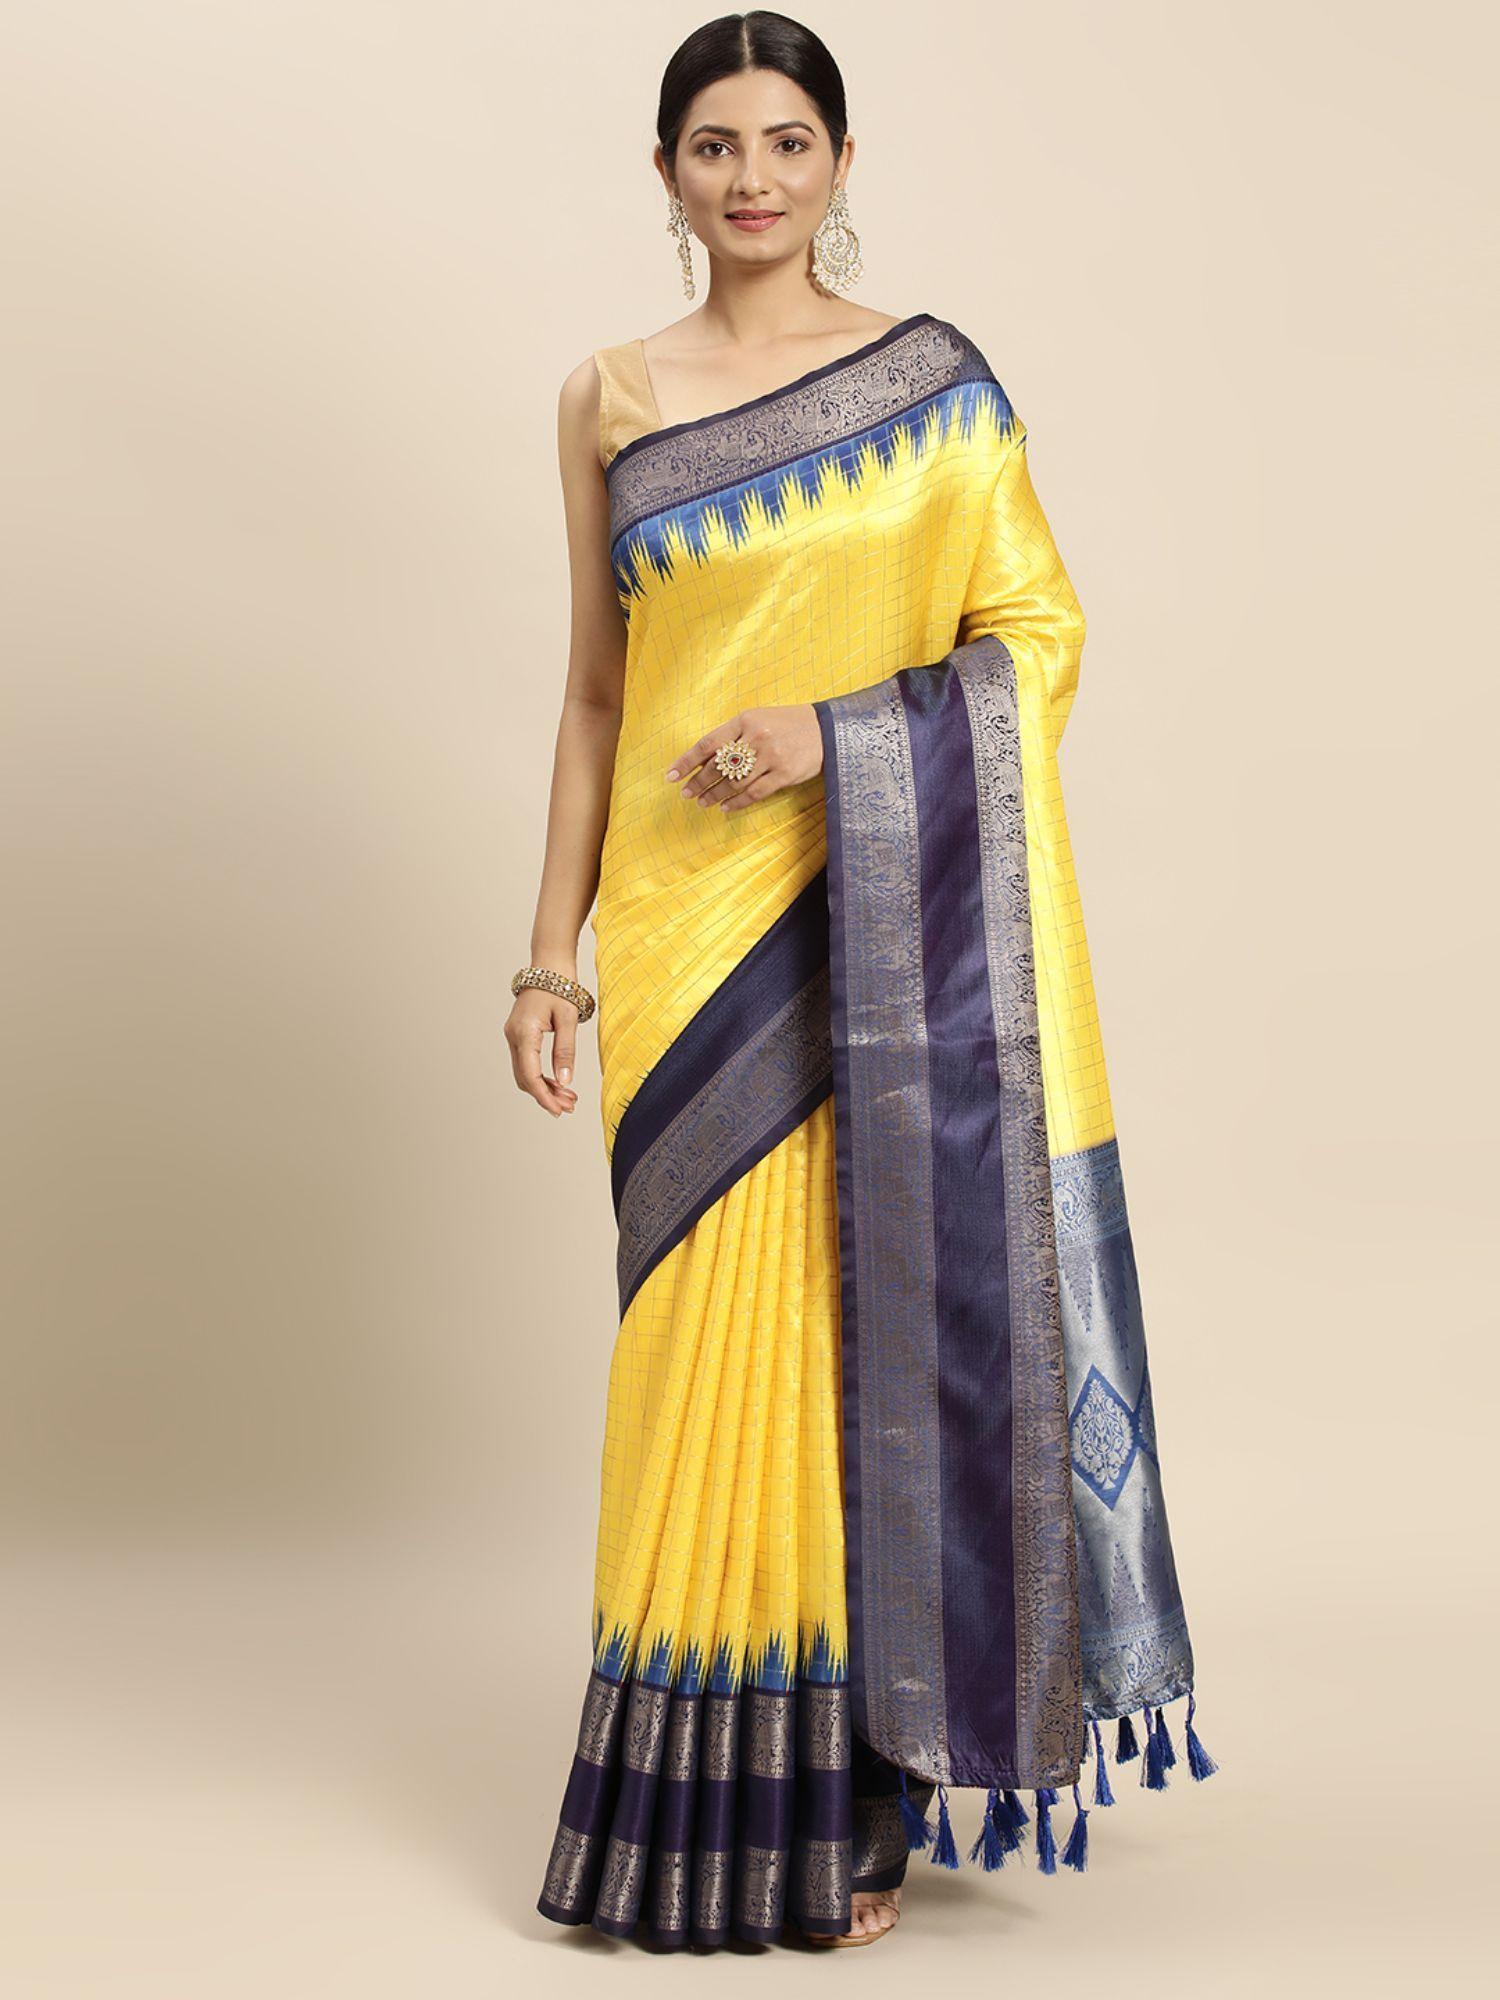 kanjeevaram/kanchipuram banarasi silk blend checks saree with unstitched blouse